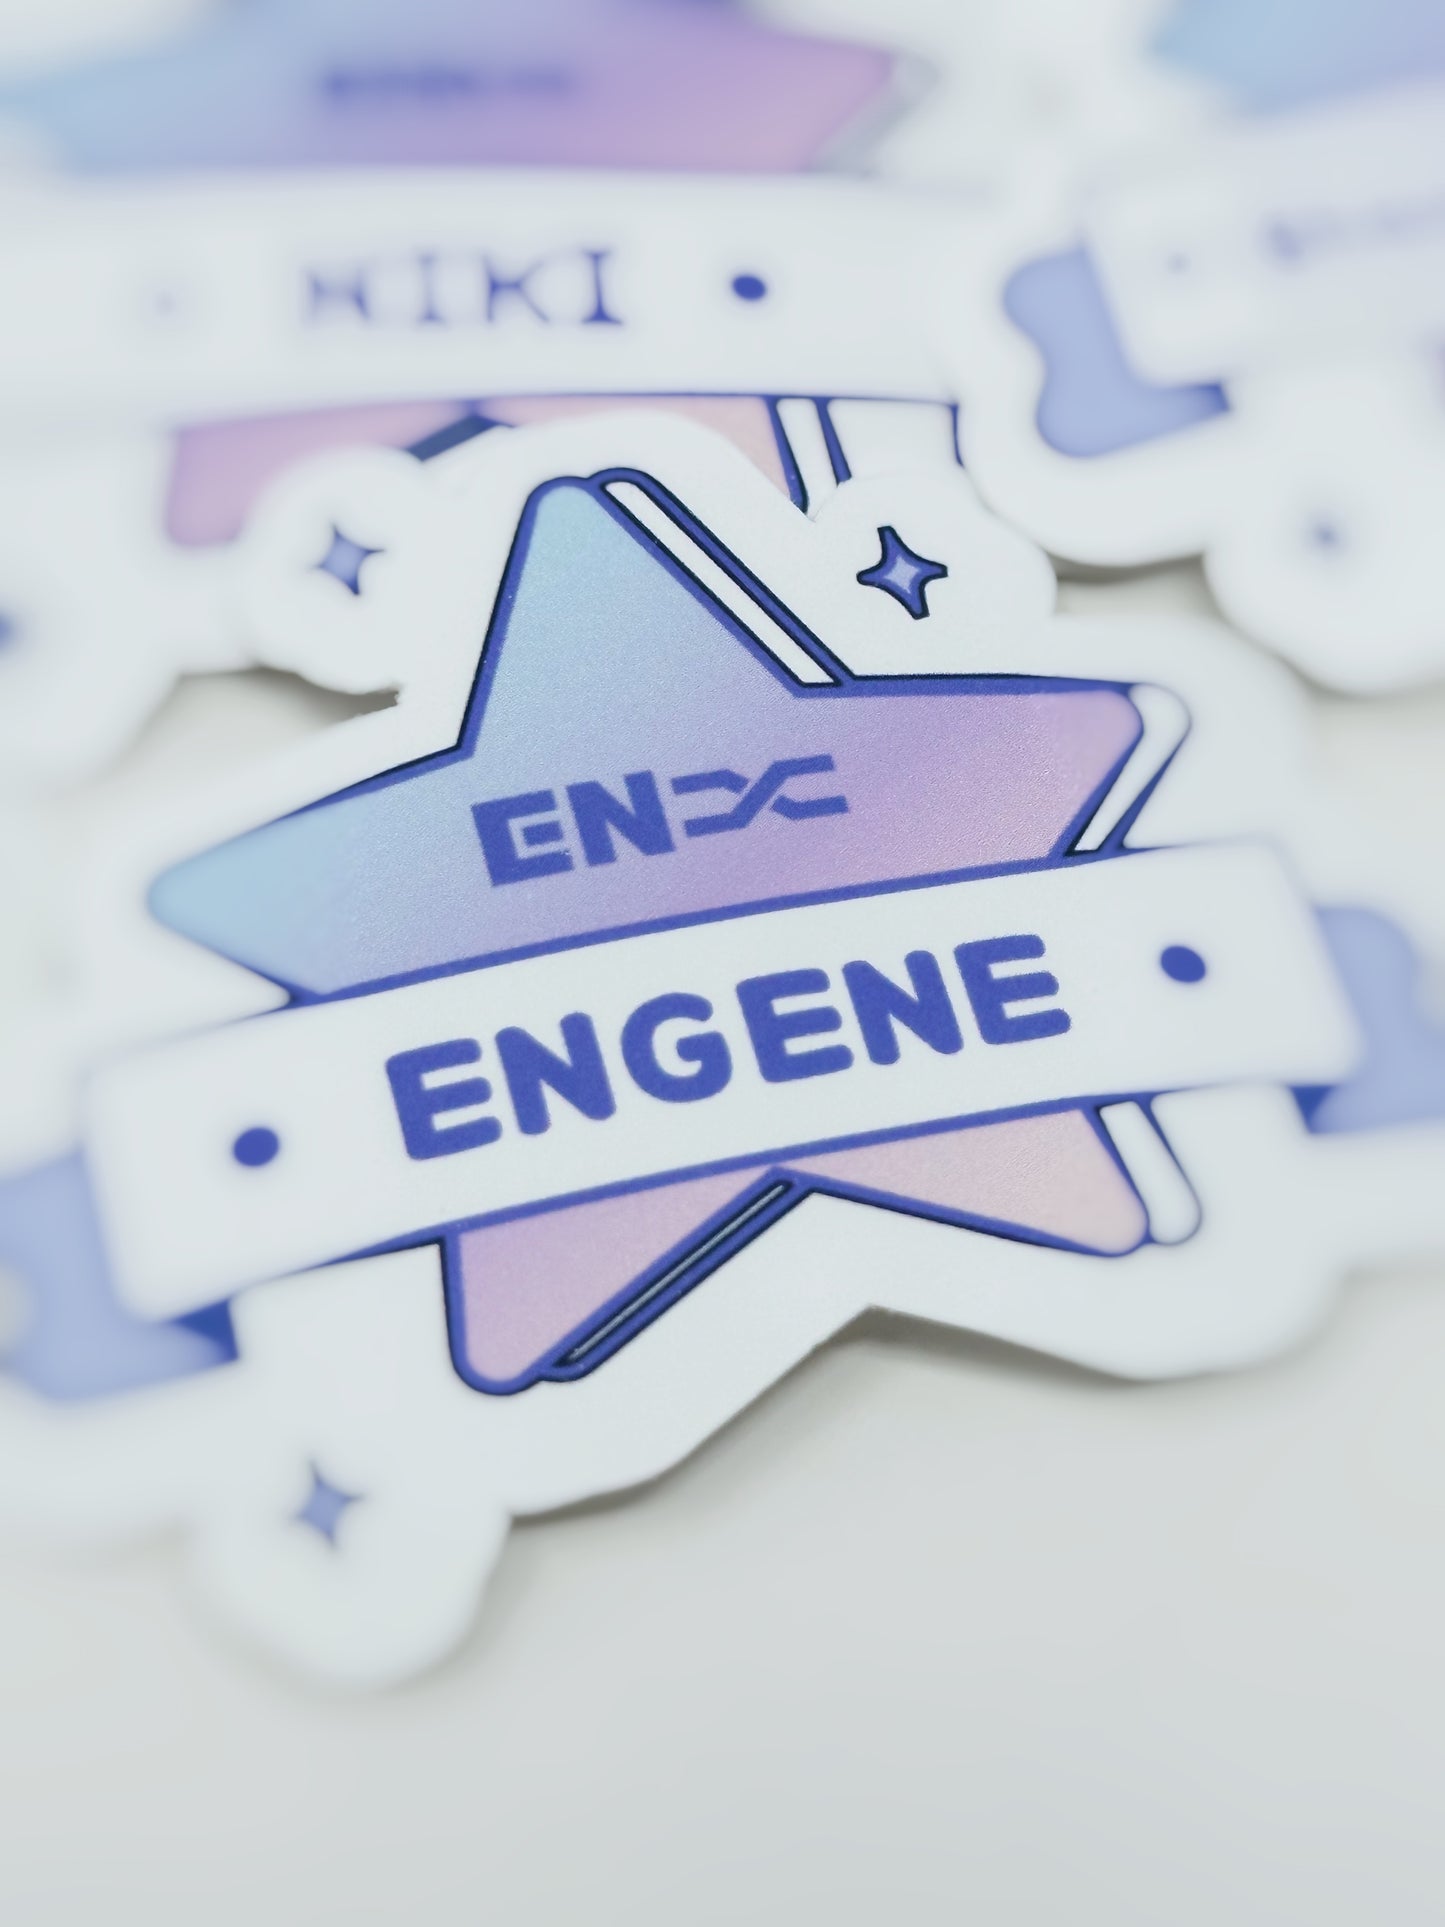 Enhypen Member Star Stickers 2.5 in x 2 in